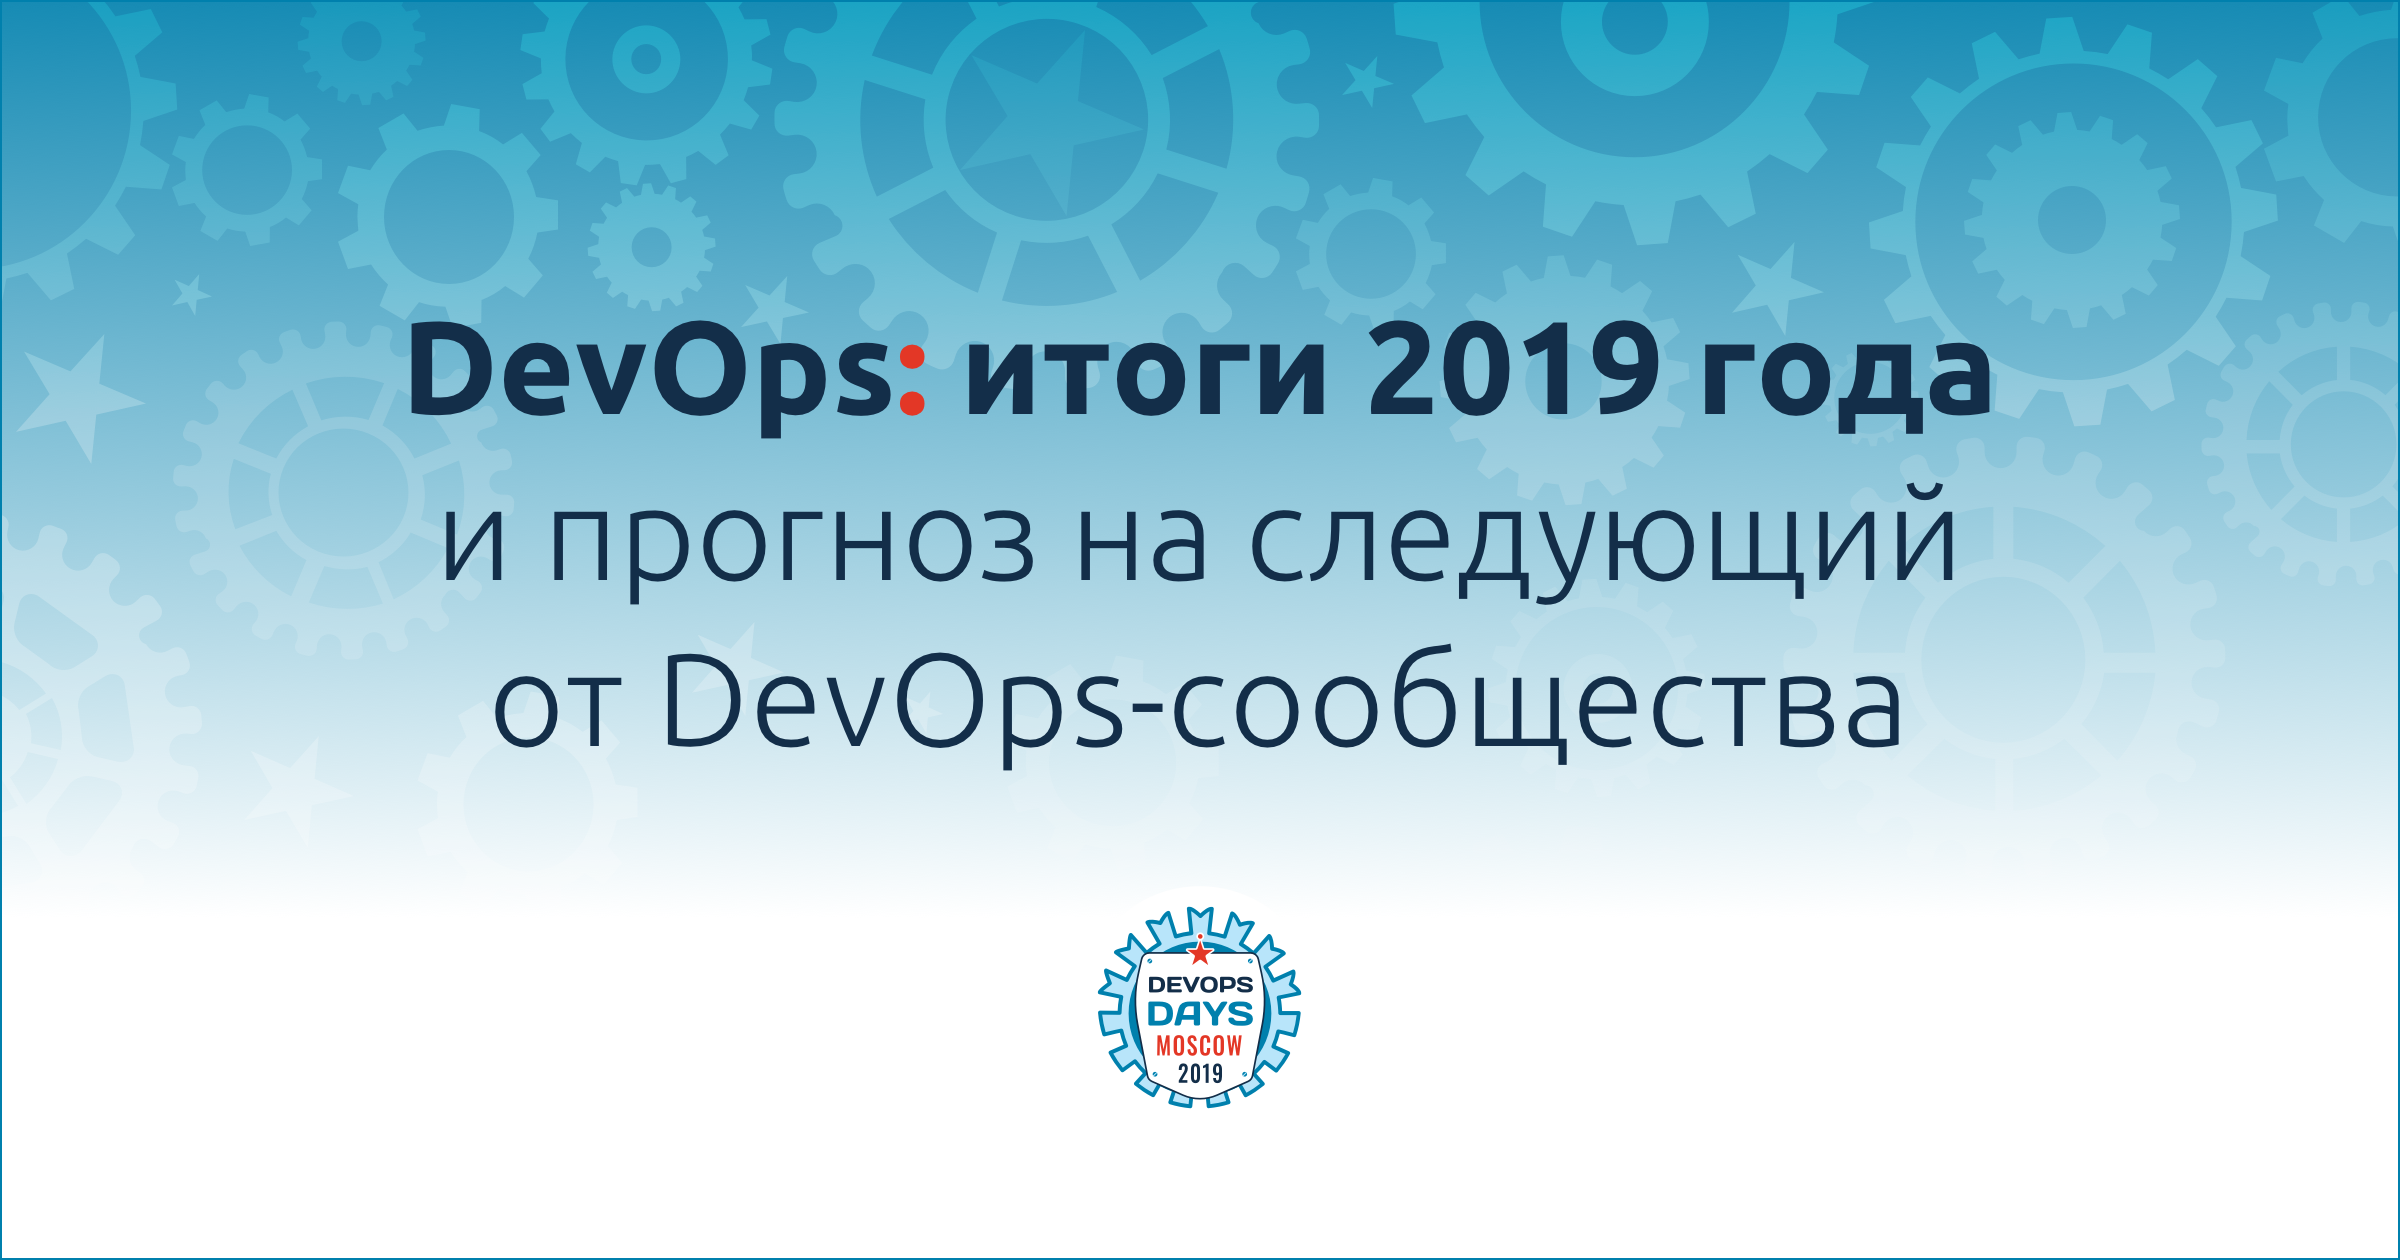 DevOps: итоги 2019 года и прогноз на следующий от DevOps-сообщества - 1